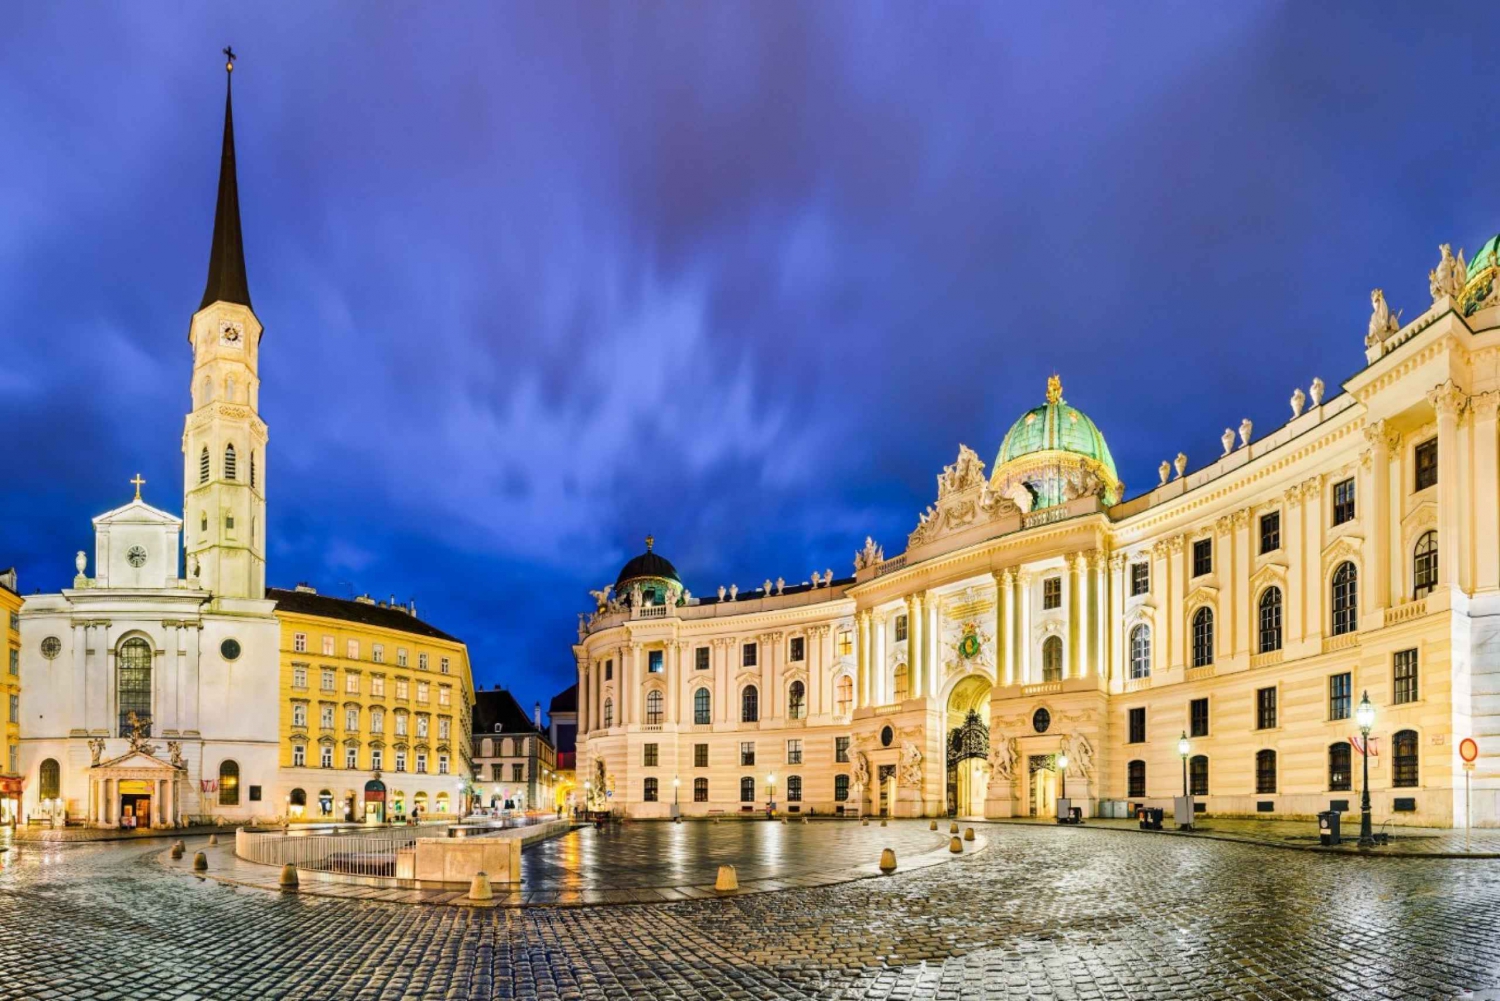 Les délices de Vienne : Un tour dans l'élégance impériale